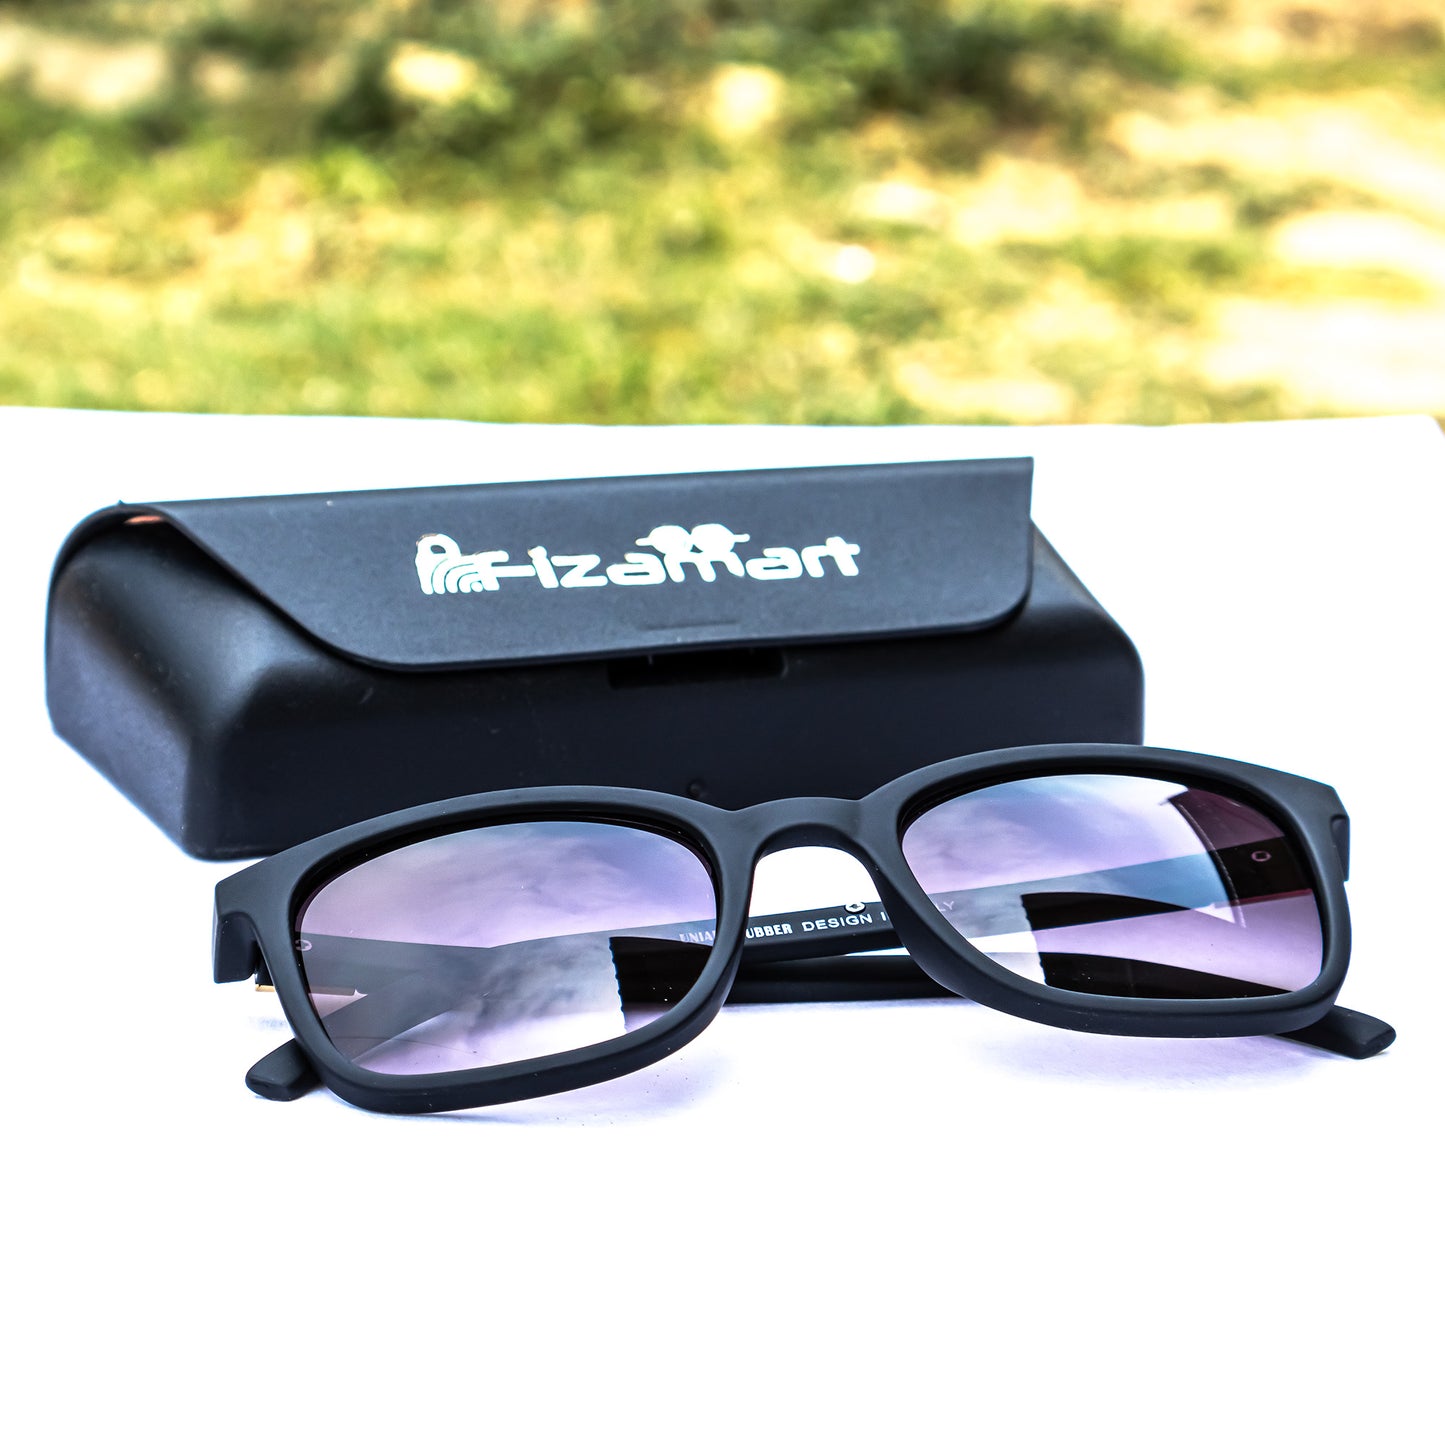 Black Stylish 100% UV Protection Sunglasses